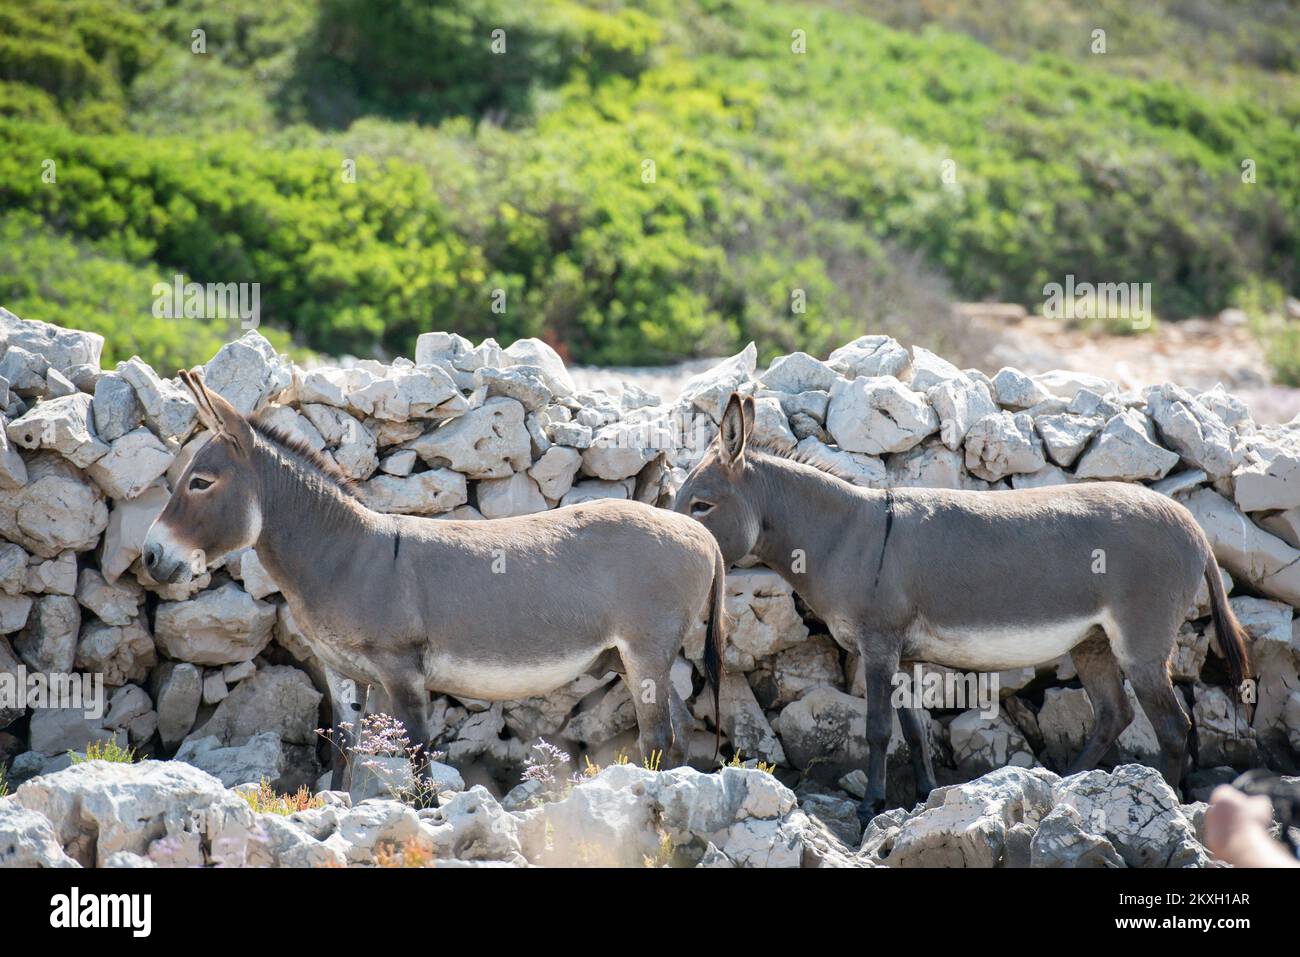 Eine große Rettungsaktion für Esel von der verlassenen und abgelegenen Insel Kurba Mala im Kornati-Archipel, Kroatien, August 4,2020. Eine Rettungsaktion wurde durchgeführt, nachdem Touristen aus Polen, die auf der Adria segelten, einen zwei verlassenen Esel bemerkten. Die Touristen gaben ihnen ca. 20 Liter Wasser, die Esel tranken alles, so dass die Touristen sicher waren, dass die Tiere verlassen waren und dass sie Hilfe brauchten. Die Retter konnten die Esel nicht fangen und ließen sie auf der Insel zurück, als sie feststellten, dass sie bei guter Gesundheit waren. Foto: Dino Stanin/PIXSELL Stockfoto